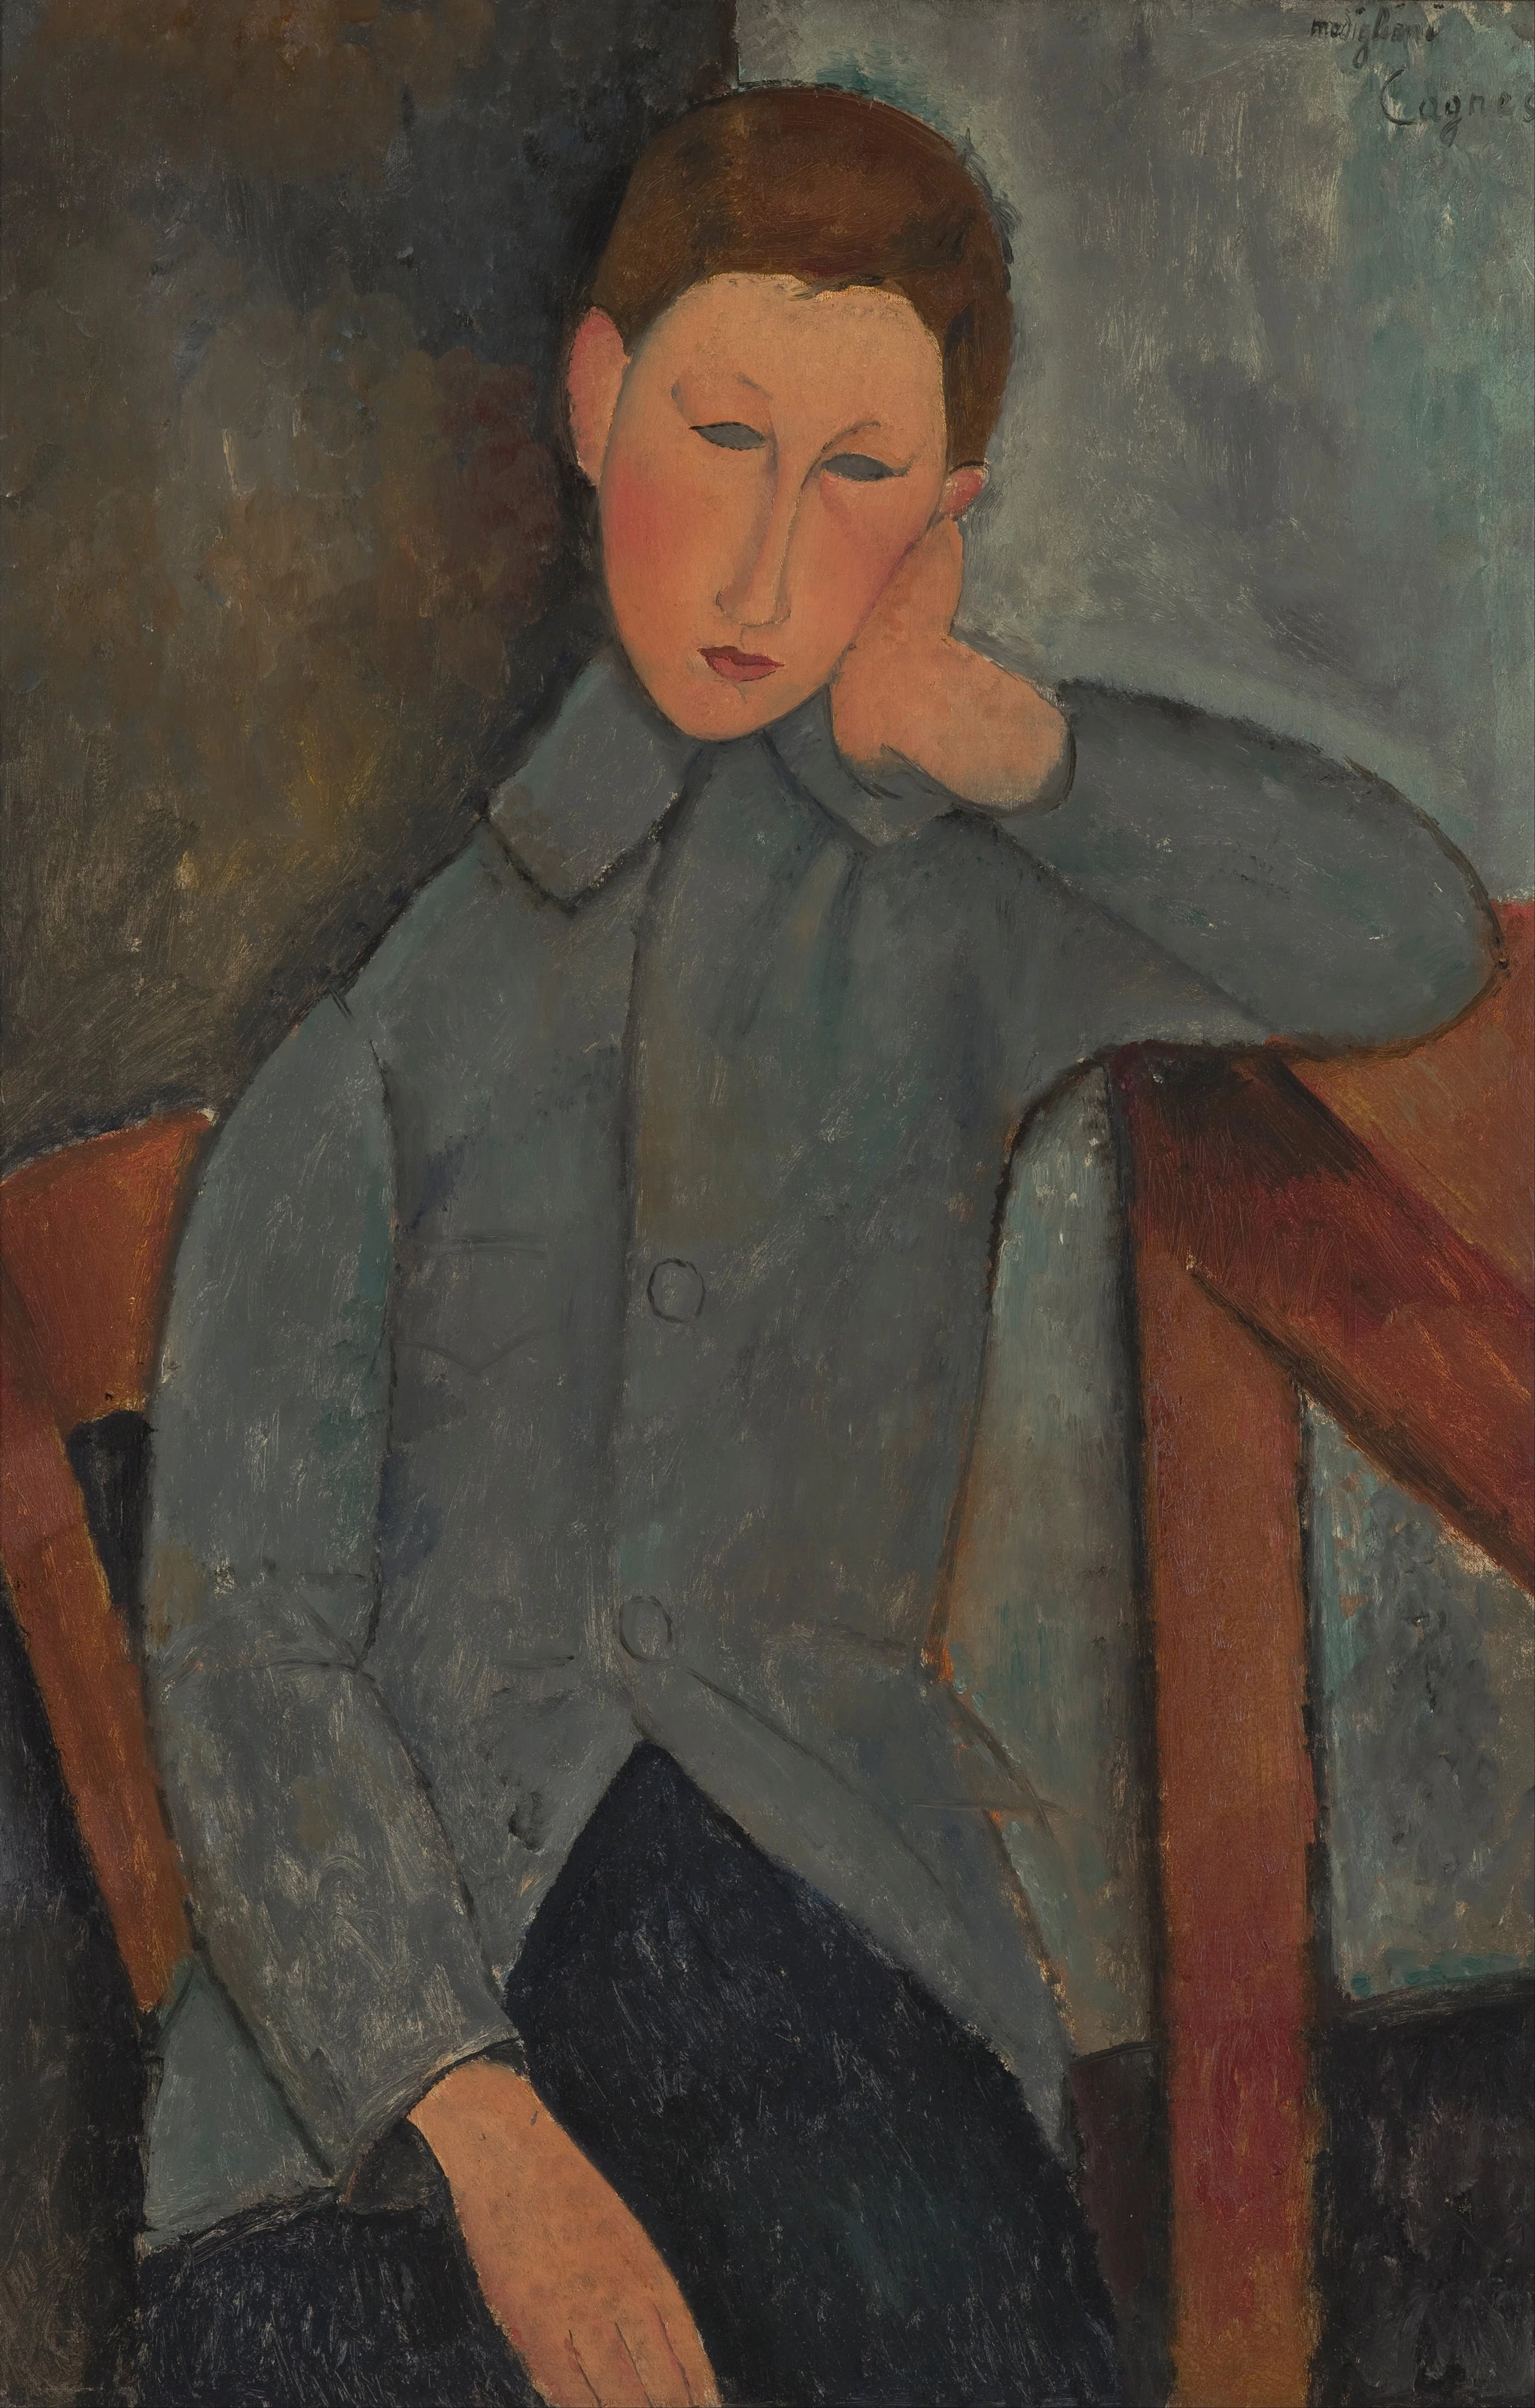 The Boy, Amedeo Modigliani